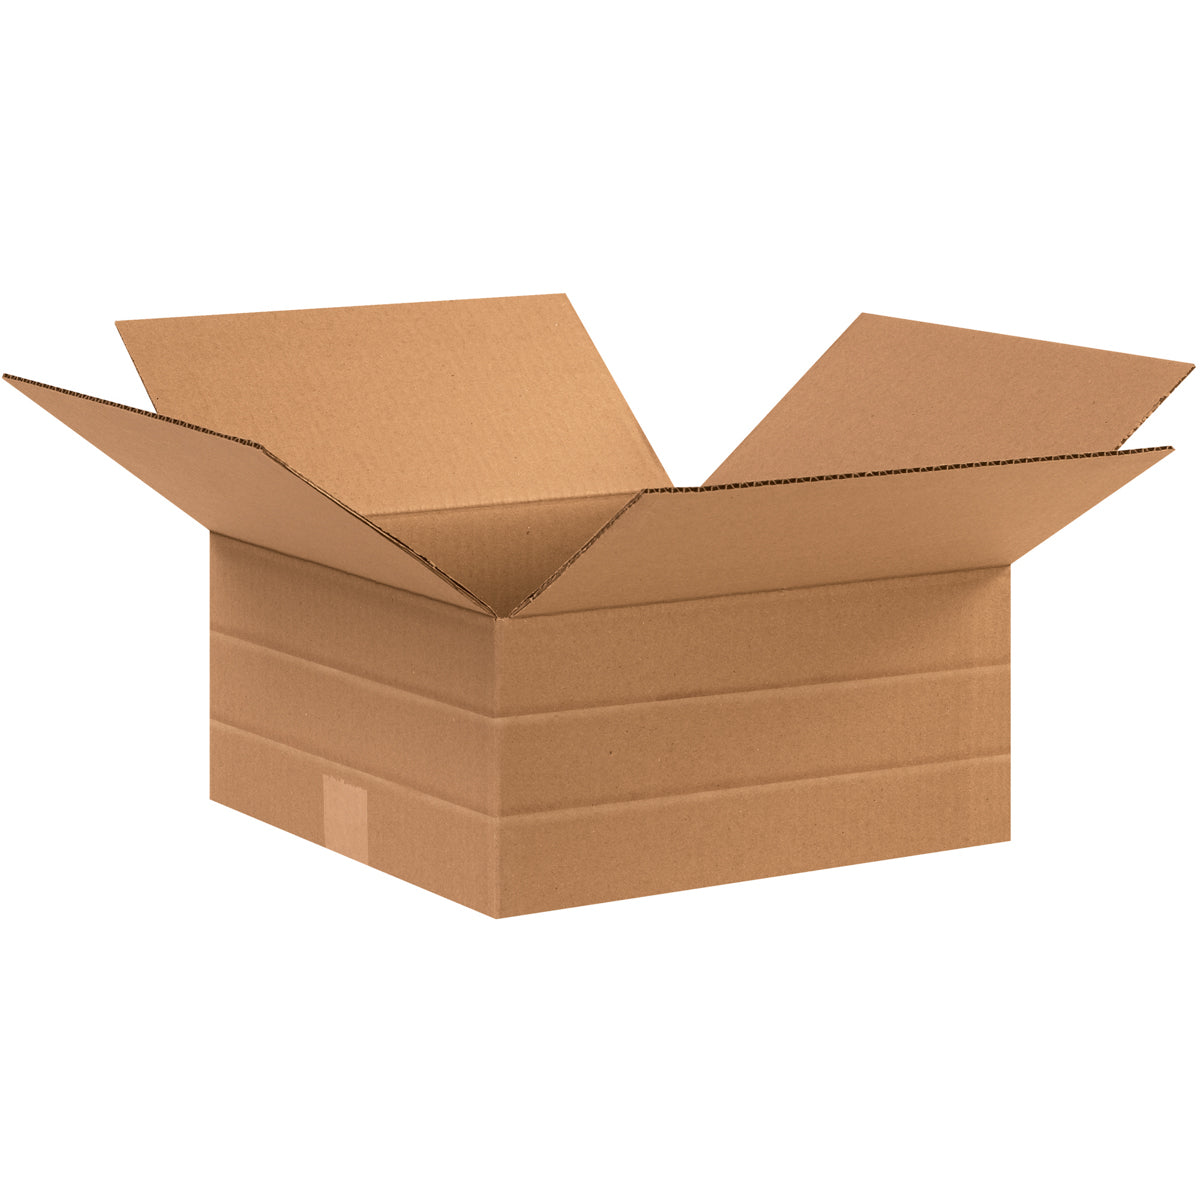 The same box. Коробки. Картонная коробка. Коробка 20х20х10 см. Коробки 5 слойные картонные.